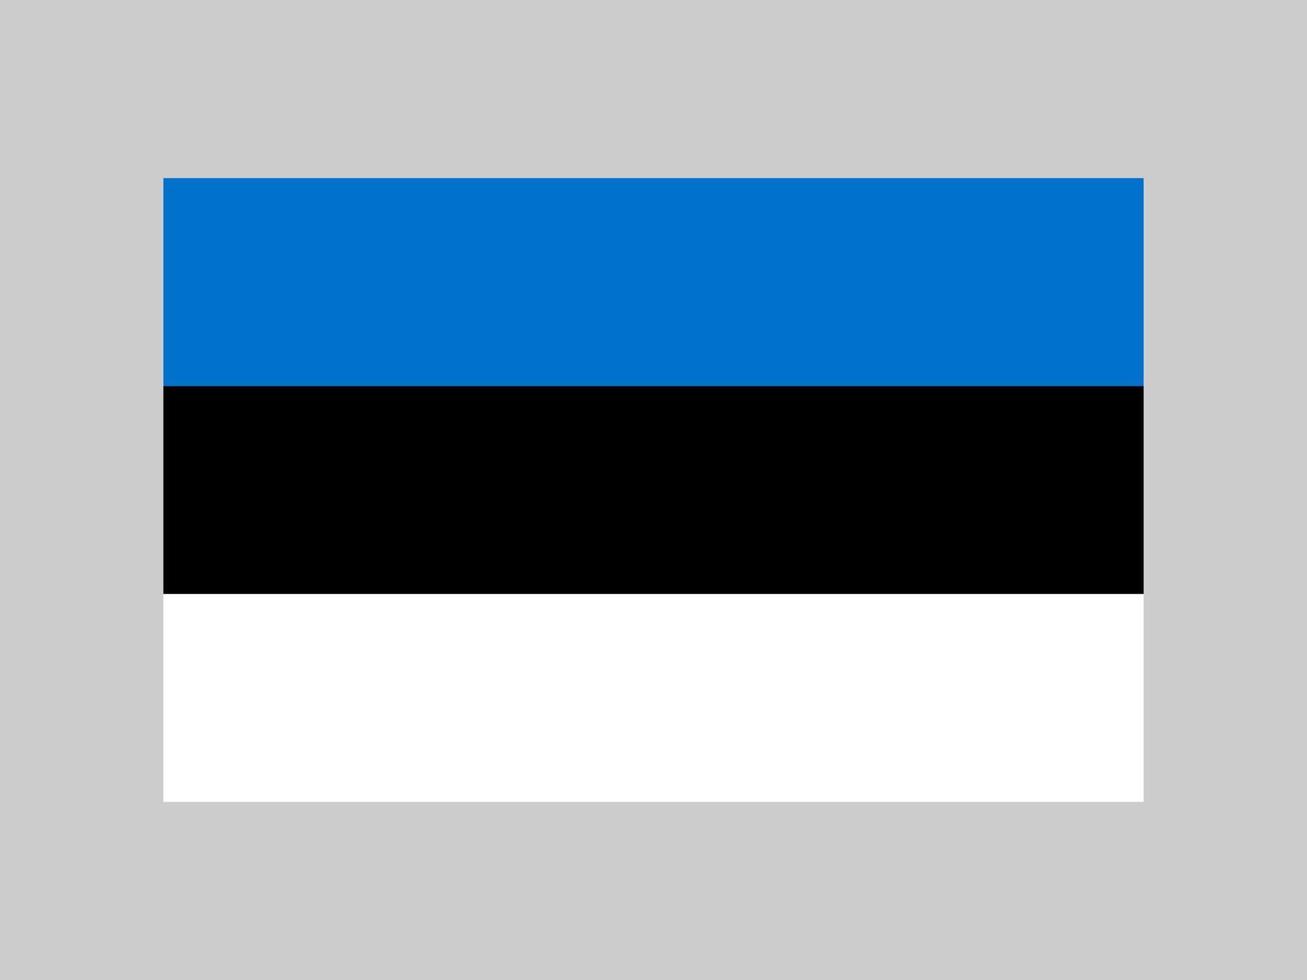 estlands flagga, officiella färger och proportioner. vektor illustration.